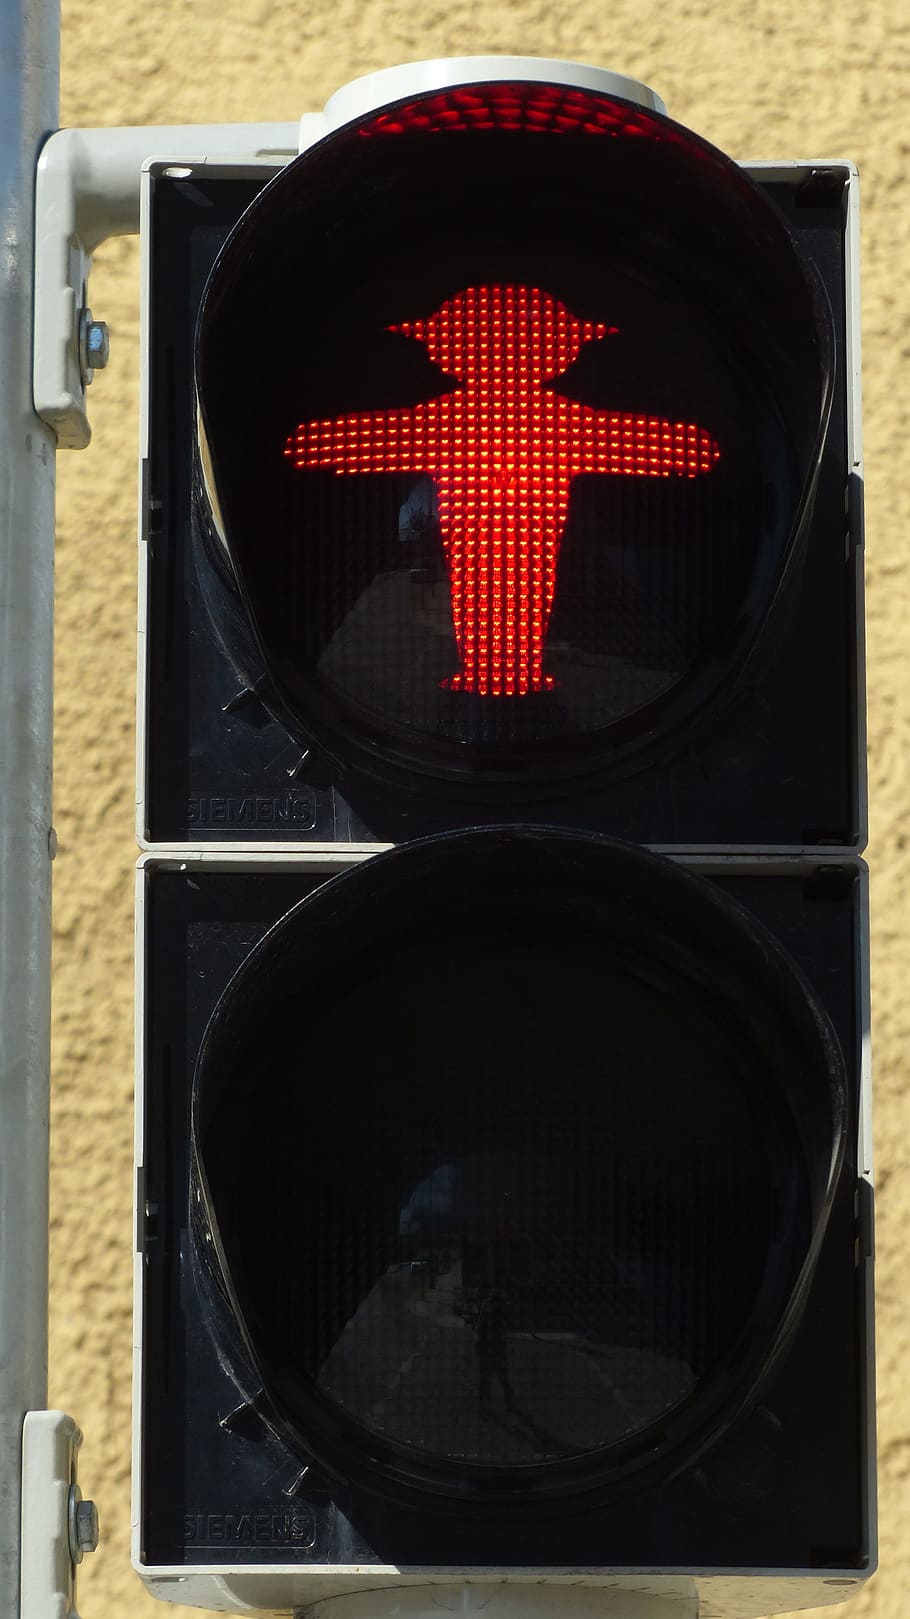 semáforos, passarela, homenzinho verde, sinal de trânsito, vermelho, machos, sinal luminoso, engrenagem do pé machos, sinal de estrada, estrada